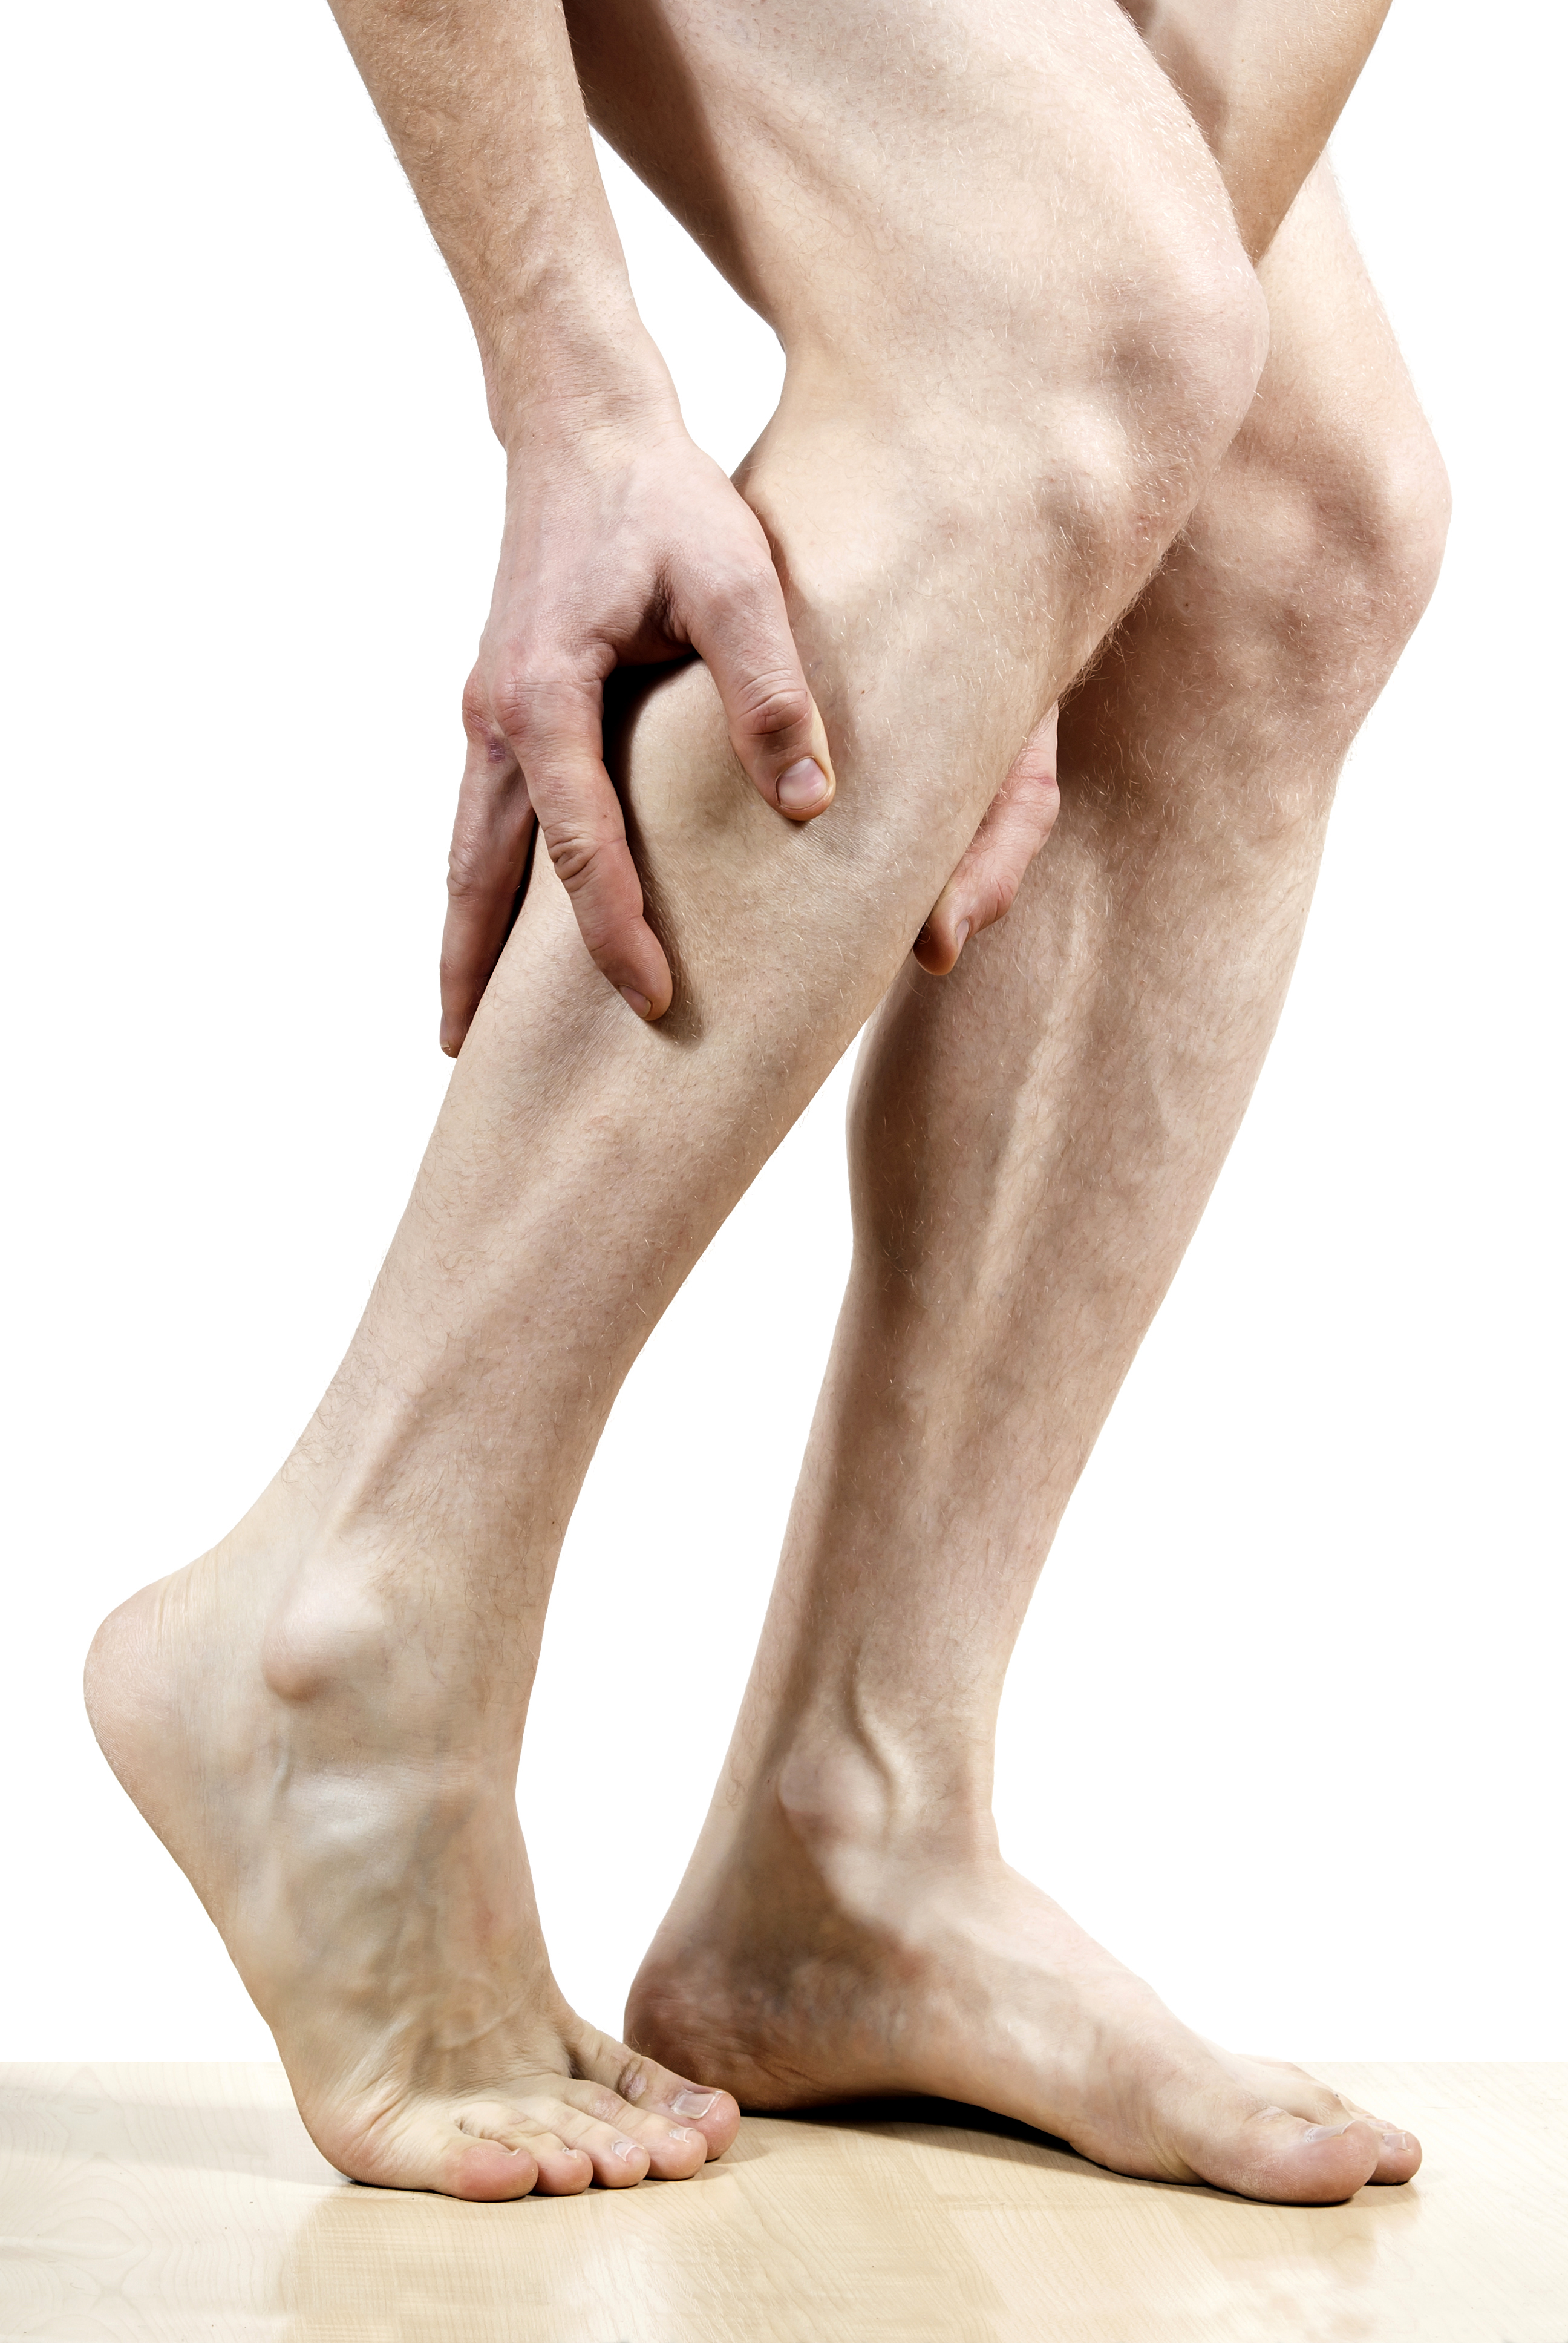 Ишемия мышц. Облитерирующий атеросклероз гангрена. Рожистое воспаление голени. Атеросклероз сосудов нижних конечностей симптомы. Стадии атеросклероза нижних конечностей.